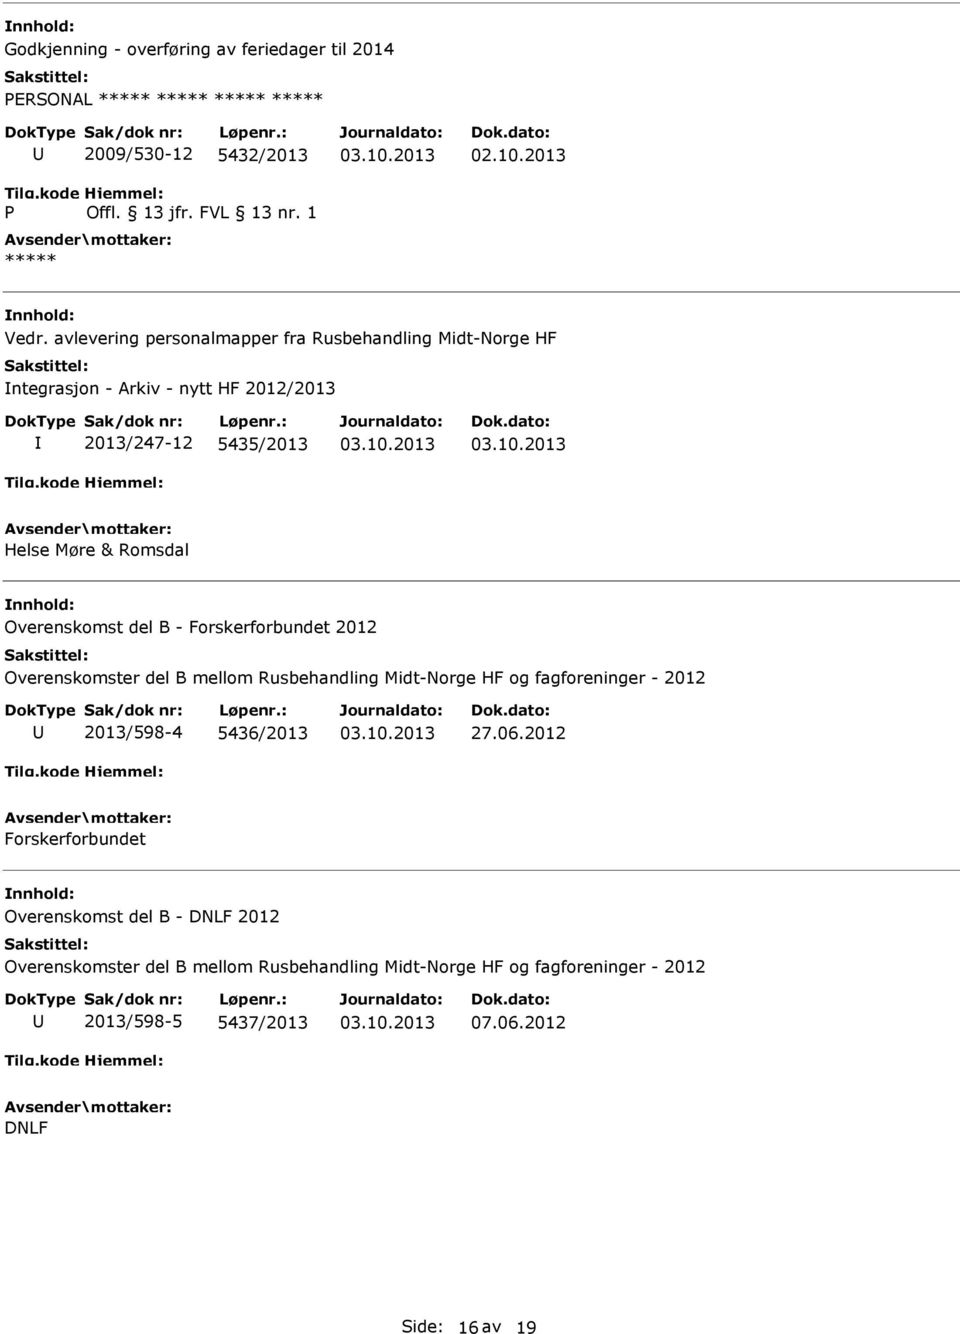 Overenskomst del B - Forskerforbundet 2012 Overenskomster del B mellom Rusbehandling Midt-Norge HF og fagforeninger - 2012 2013/598-4